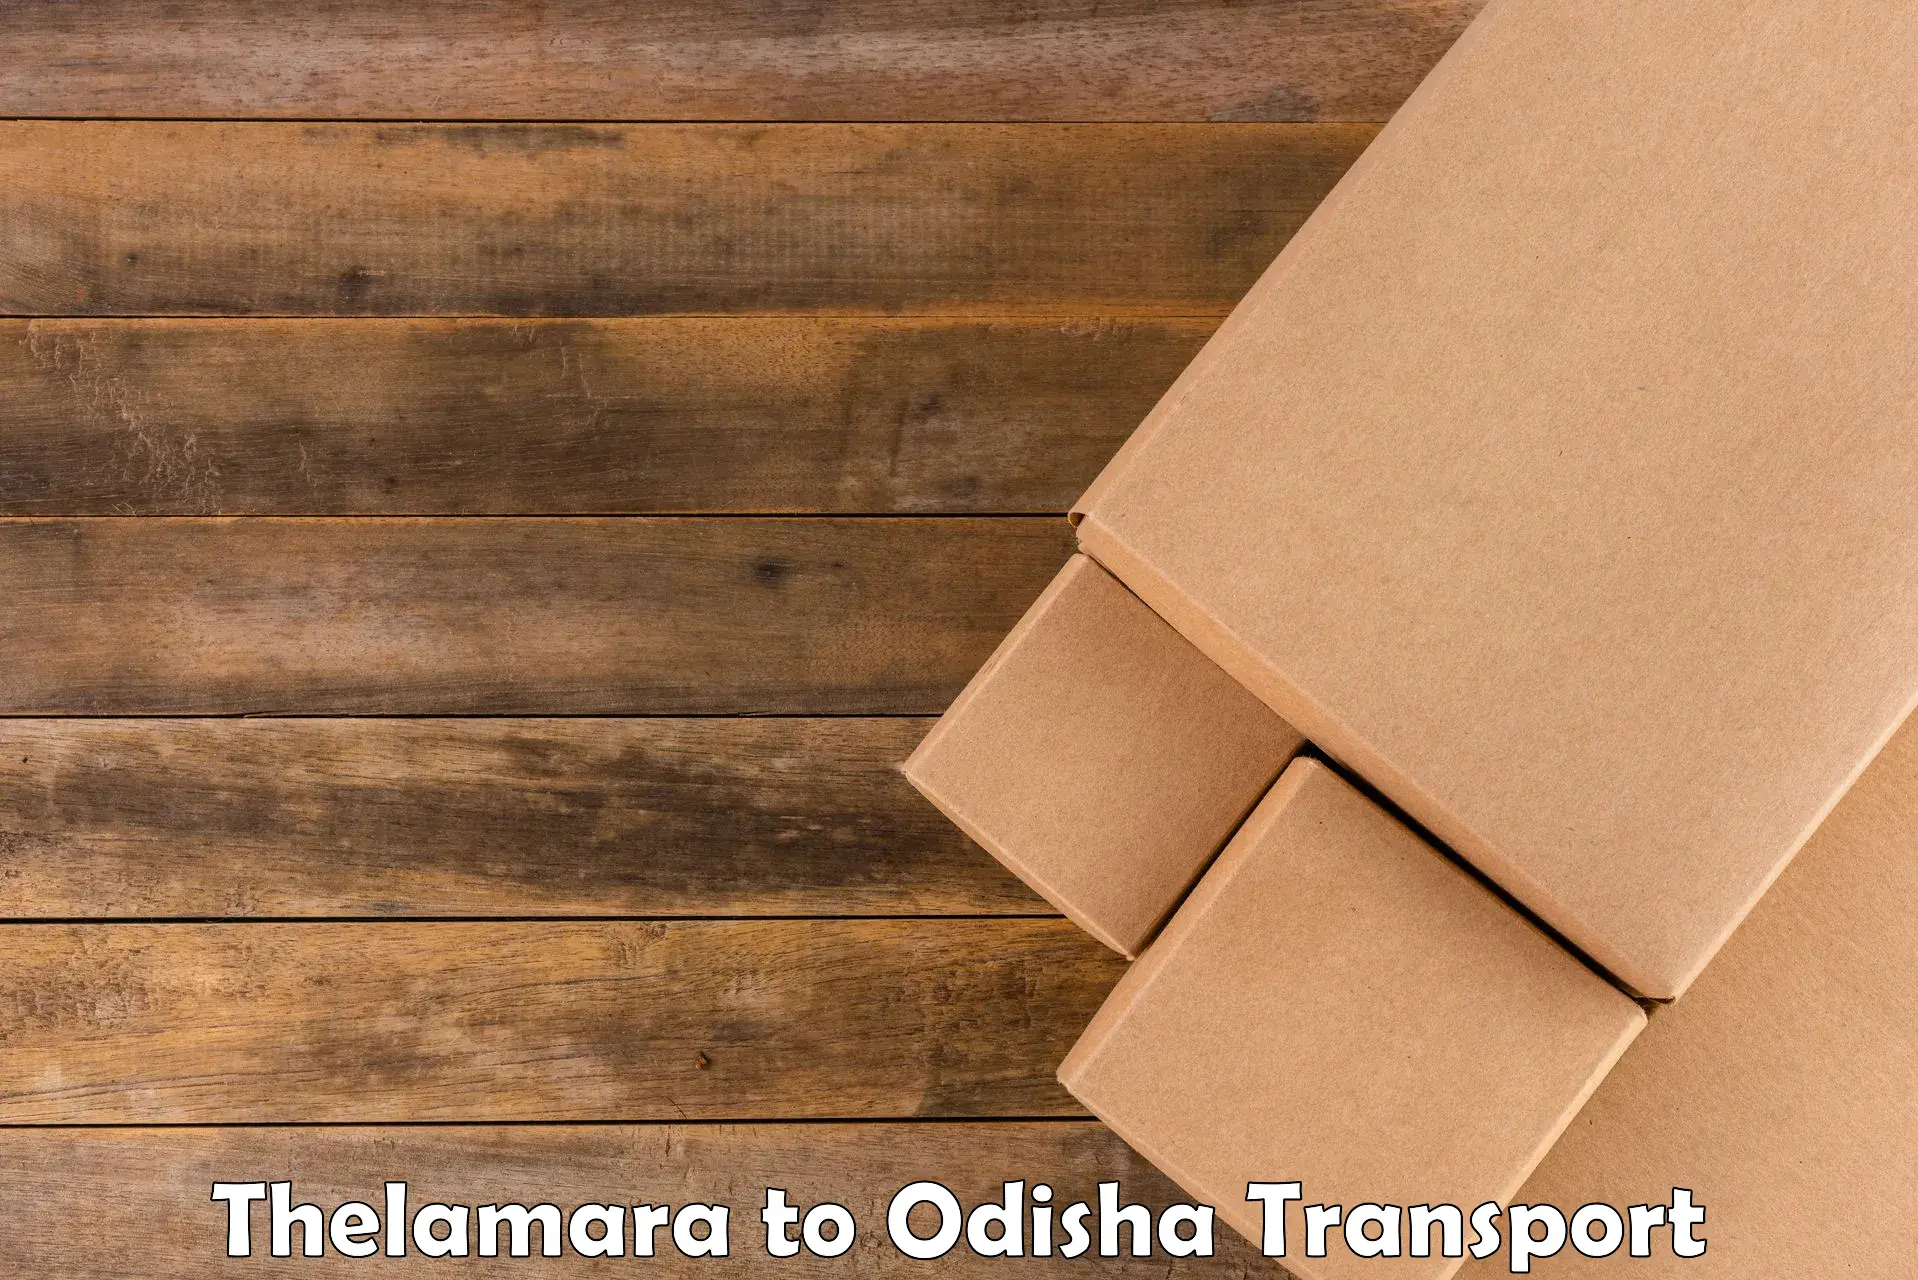 Nearby transport service Thelamara to Kesinga